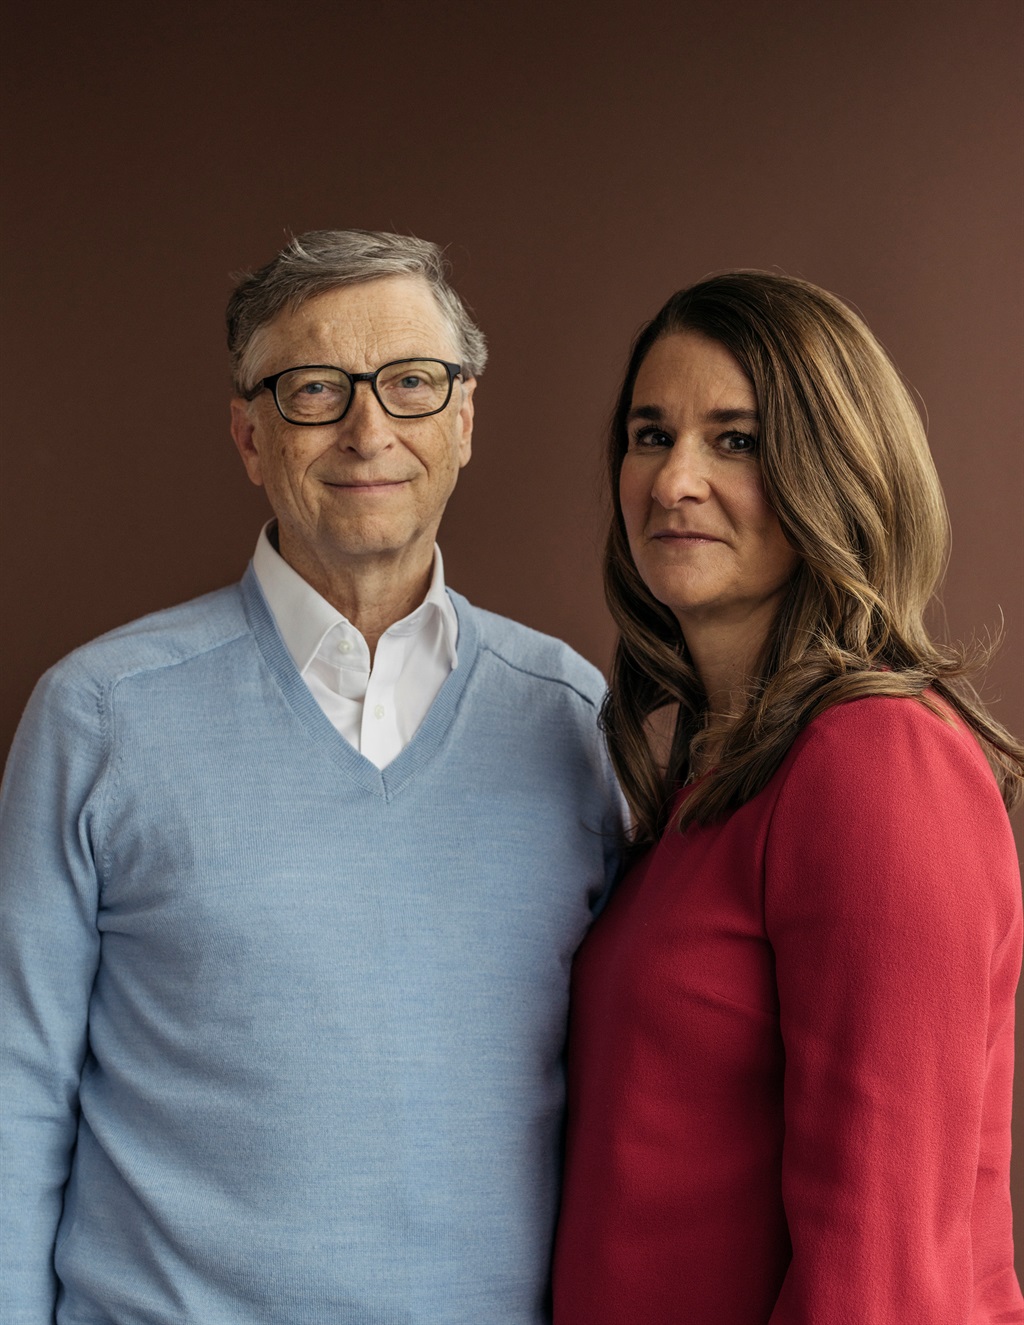 Ná ’n huwelik van 27 jaar het Bill en Melinda Gates hul egskeiding aangekondig. Foto: The New York Times